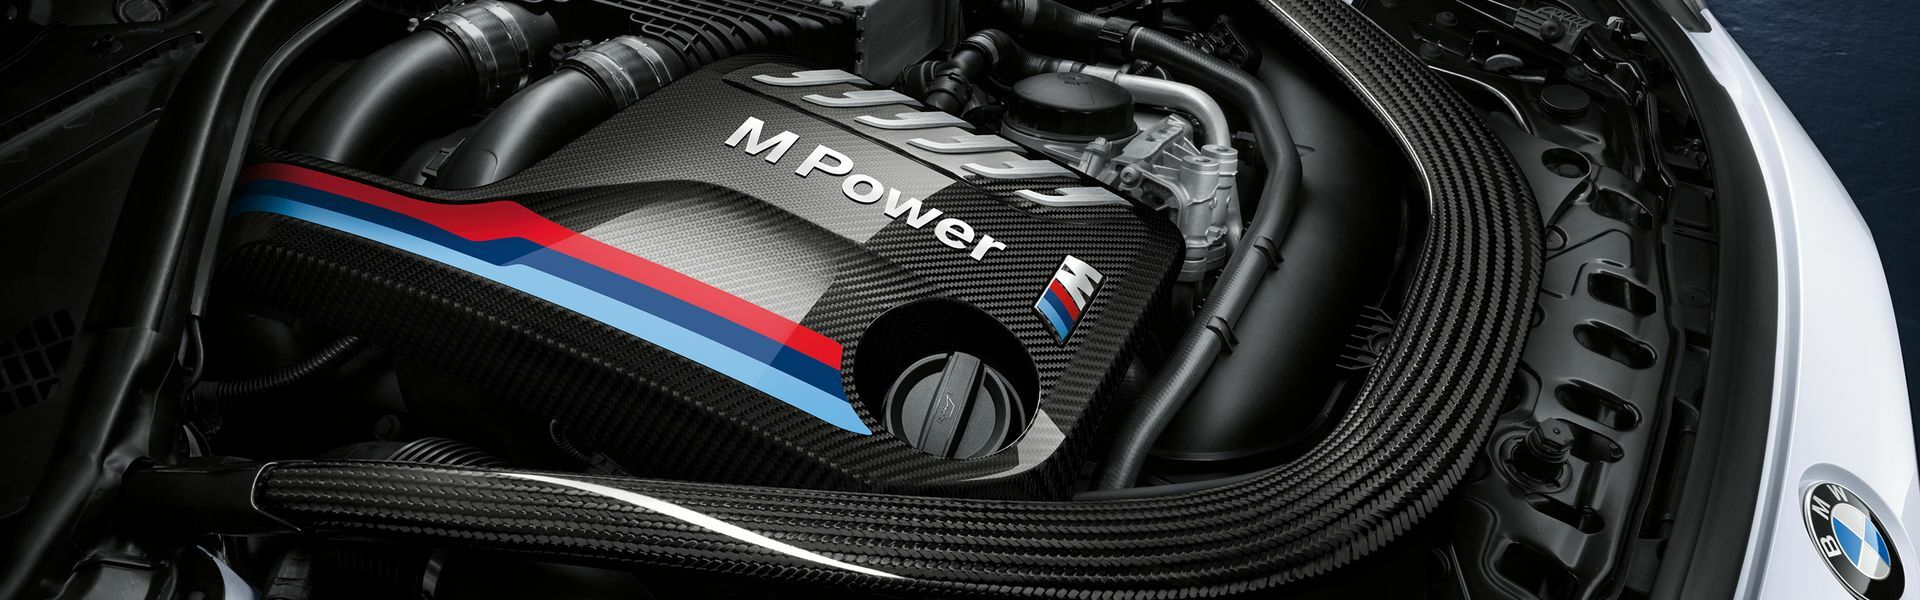 Zvýšení výkonu/ Softwarové úpravy/ Drobné performance díly pro automobil Porsche Macan GTS 95B